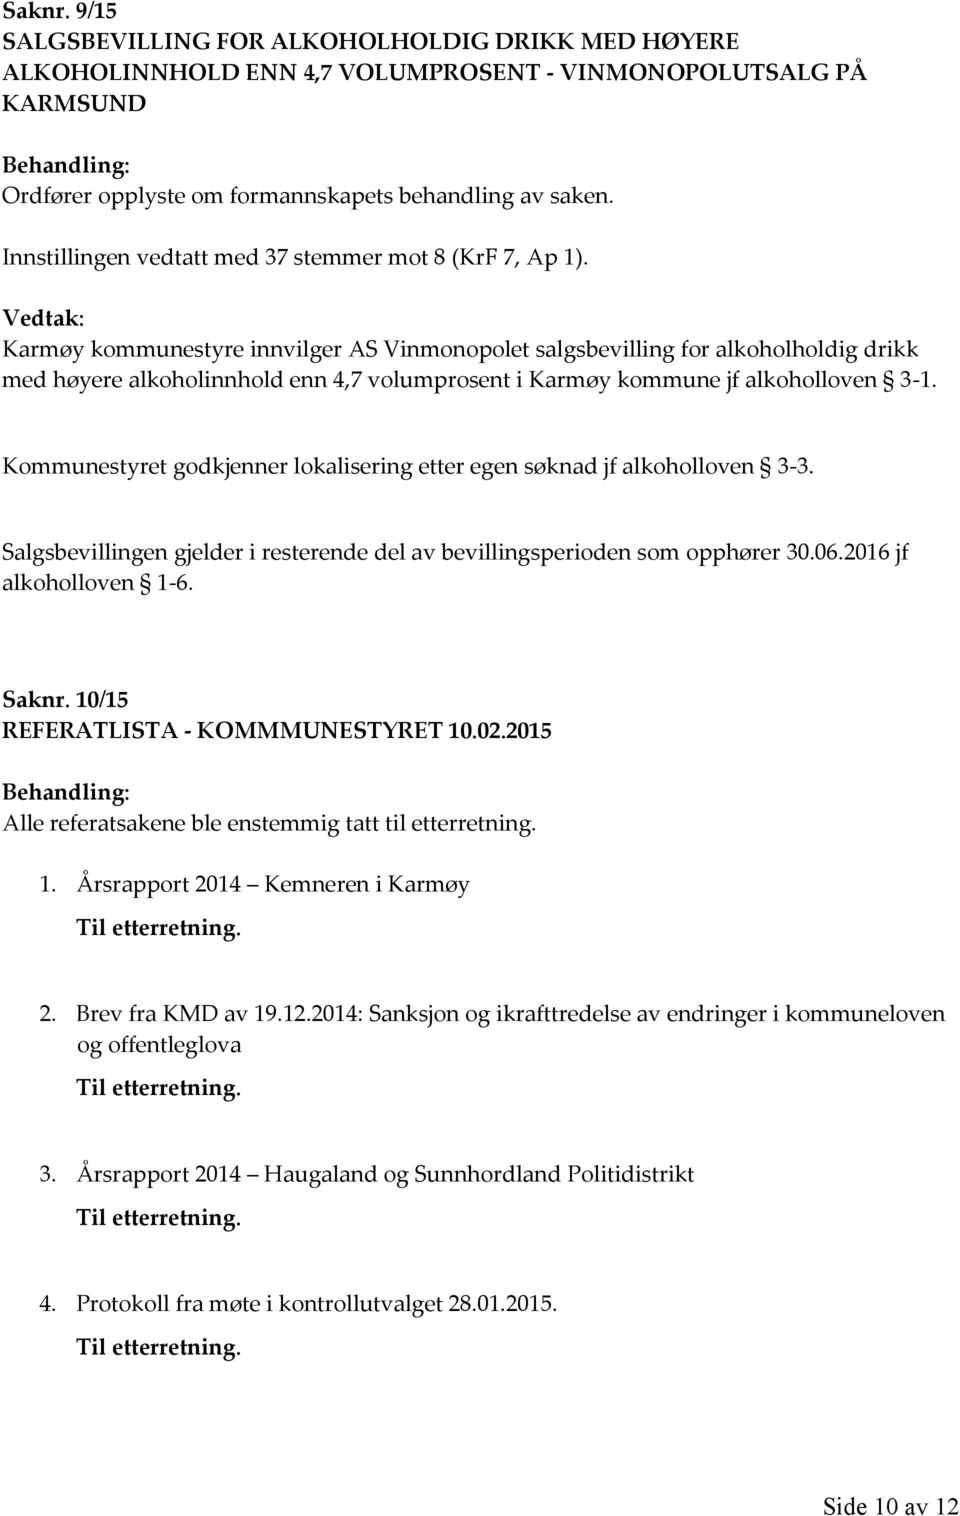 Karmøy kommunestyre innvilger AS Vinmonopolet salgsbevilling for alkoholholdig drikk med høyere alkoholinnhold enn 4,7 volumprosent i Karmøy kommune jf alkoholloven 3-1.